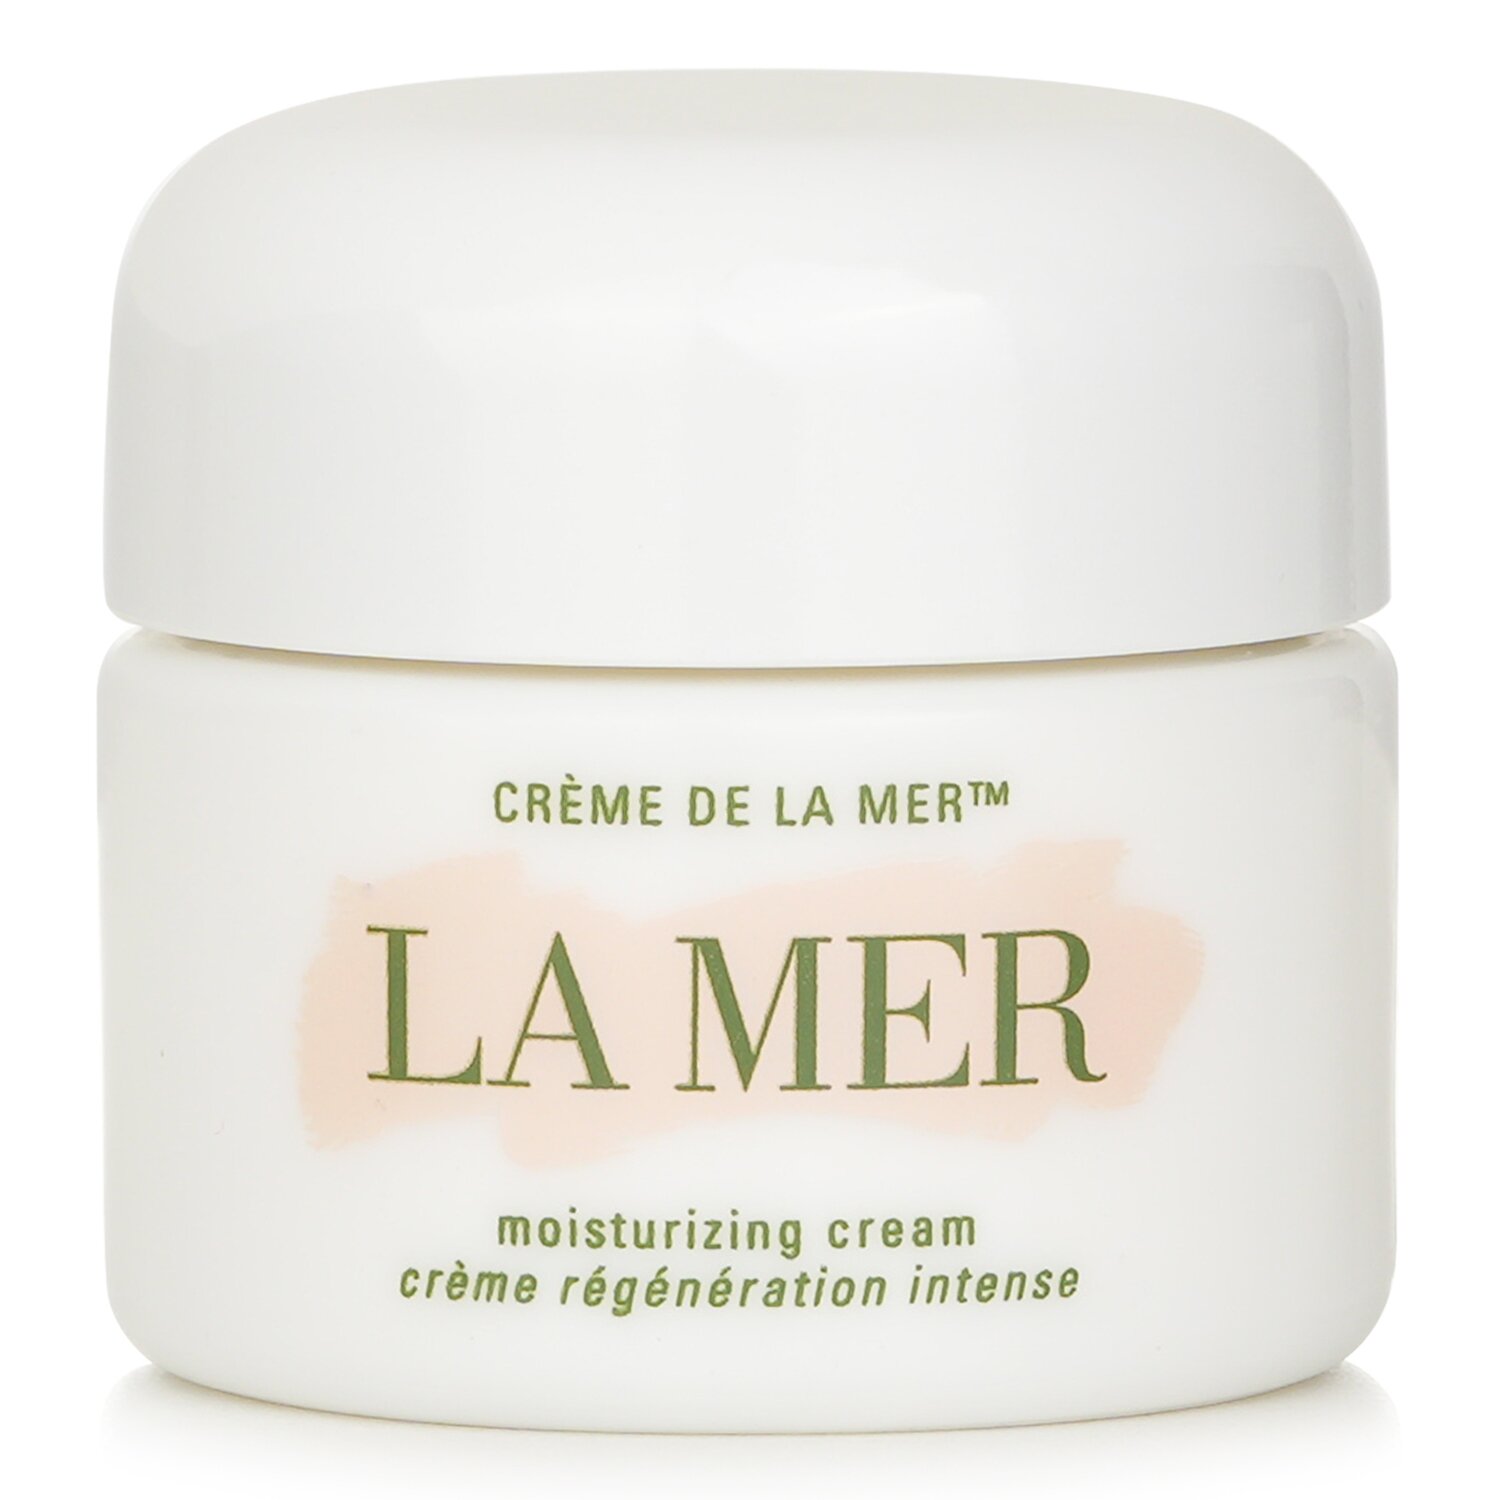 La Mer Creme De La Mer The Moisturizing Cream 30ml/1oz